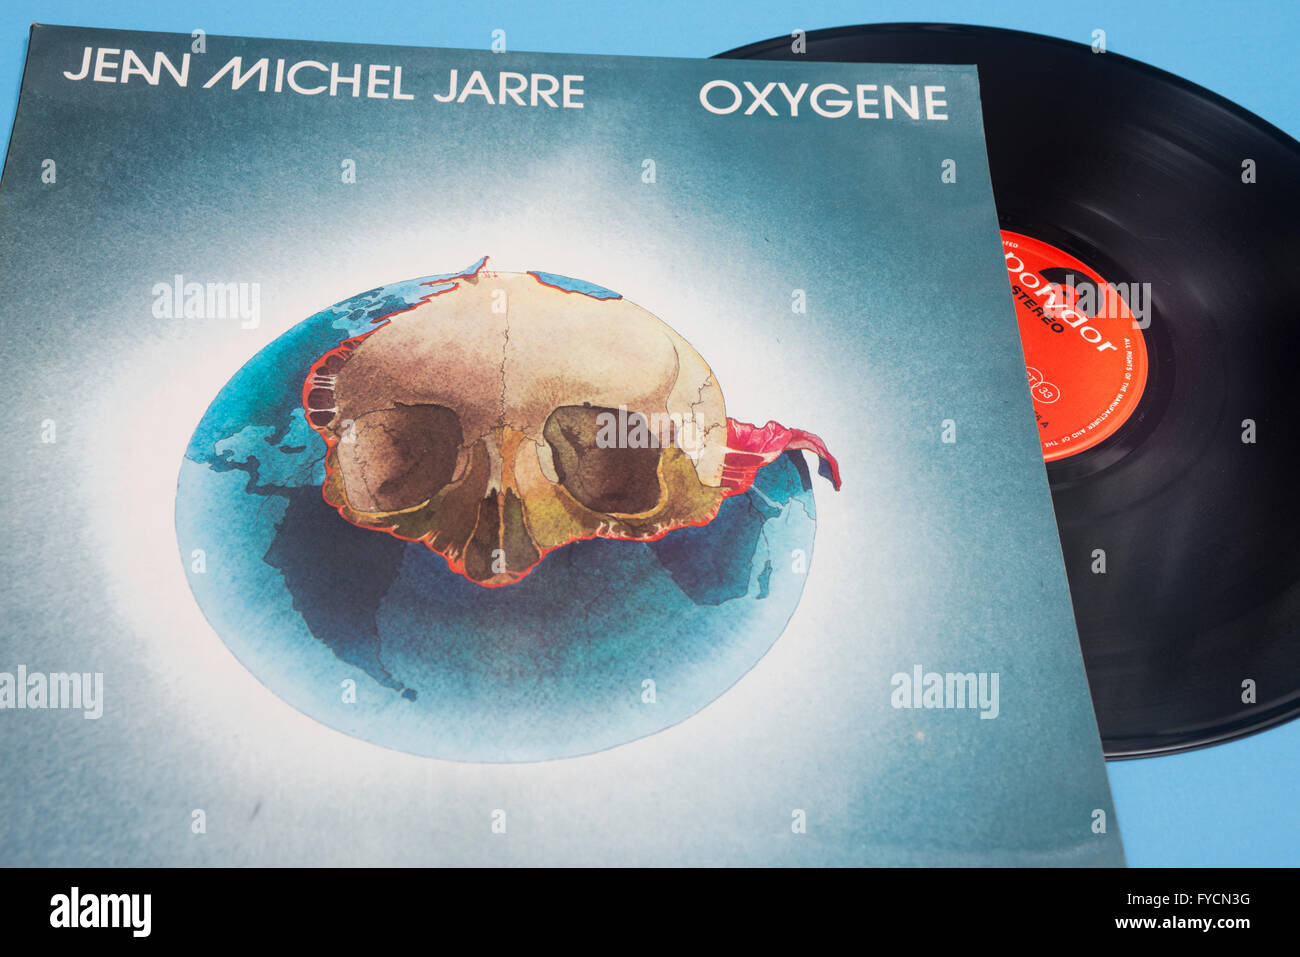 Oxygene album sur vinyl de Jean Michel Jarre avec manchon original artwork  Photo Stock - Alamy